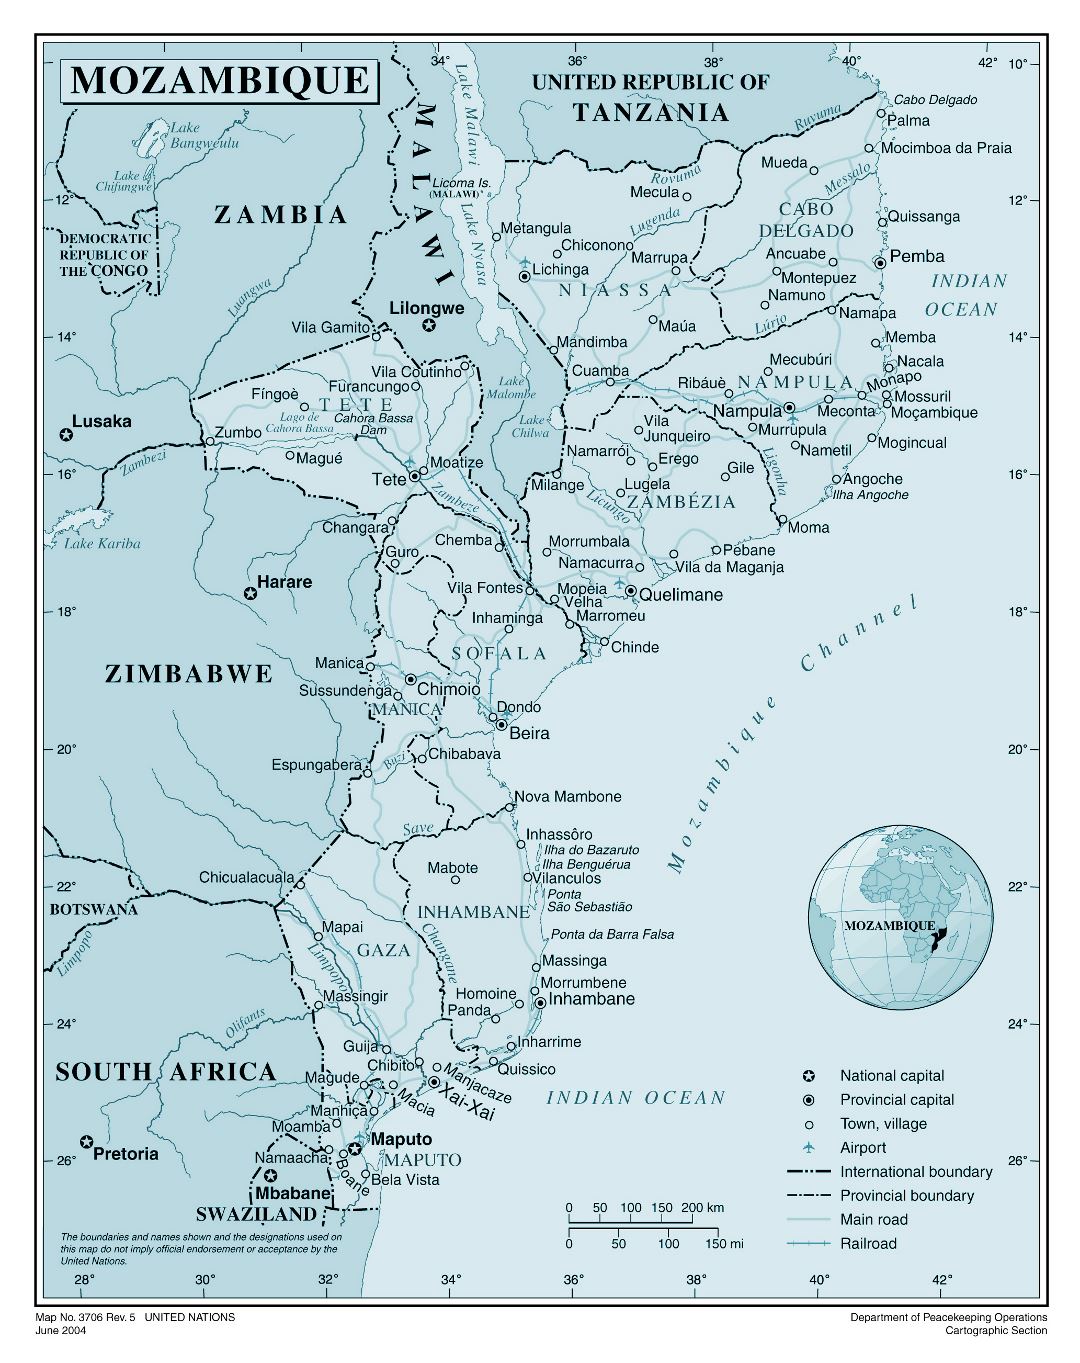 Большая детальная политическая и административная карта Мозамбика со всеми городами, дорогами, железными дорогами и аэропортами